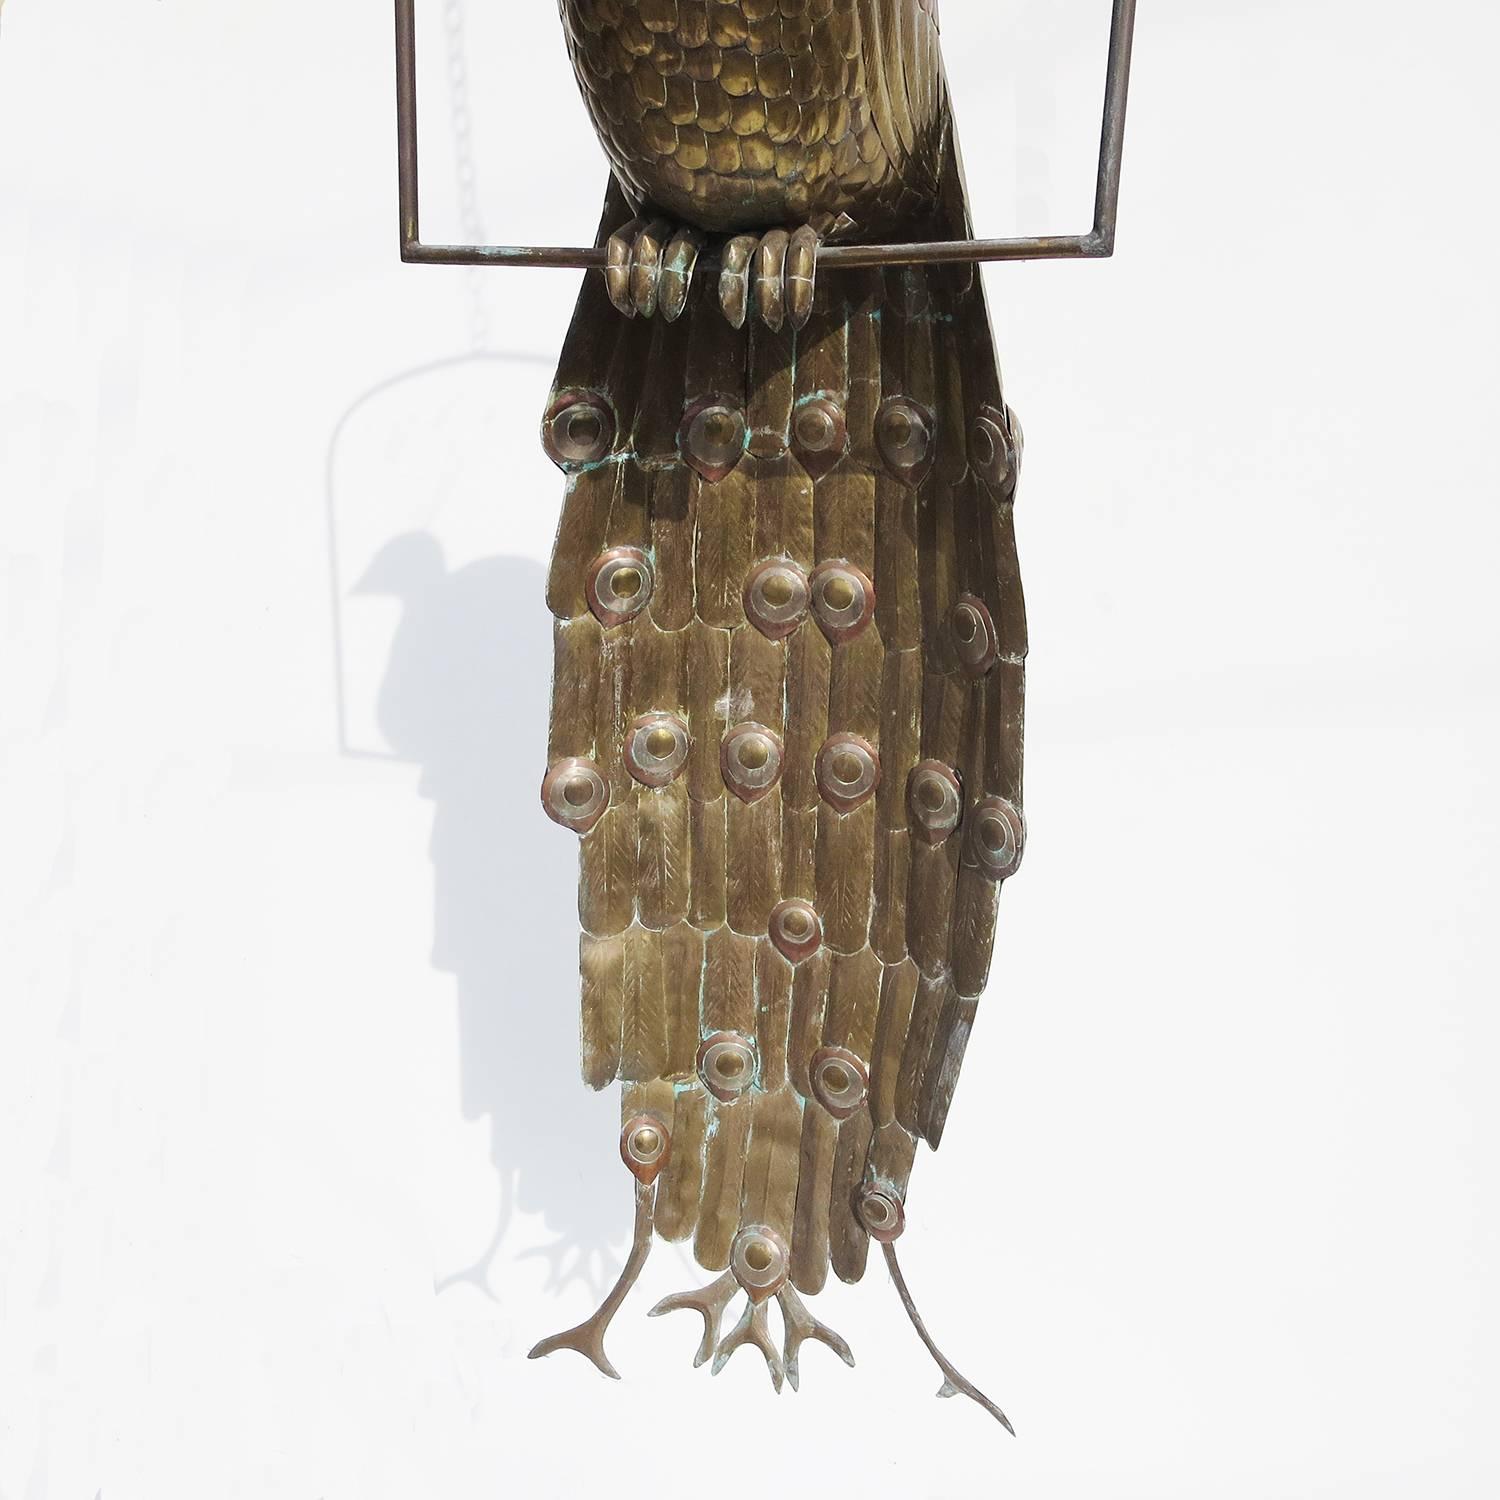 Mexican Elaborate Metal Peacock Sculpture by Sergio Bustamante #64/100